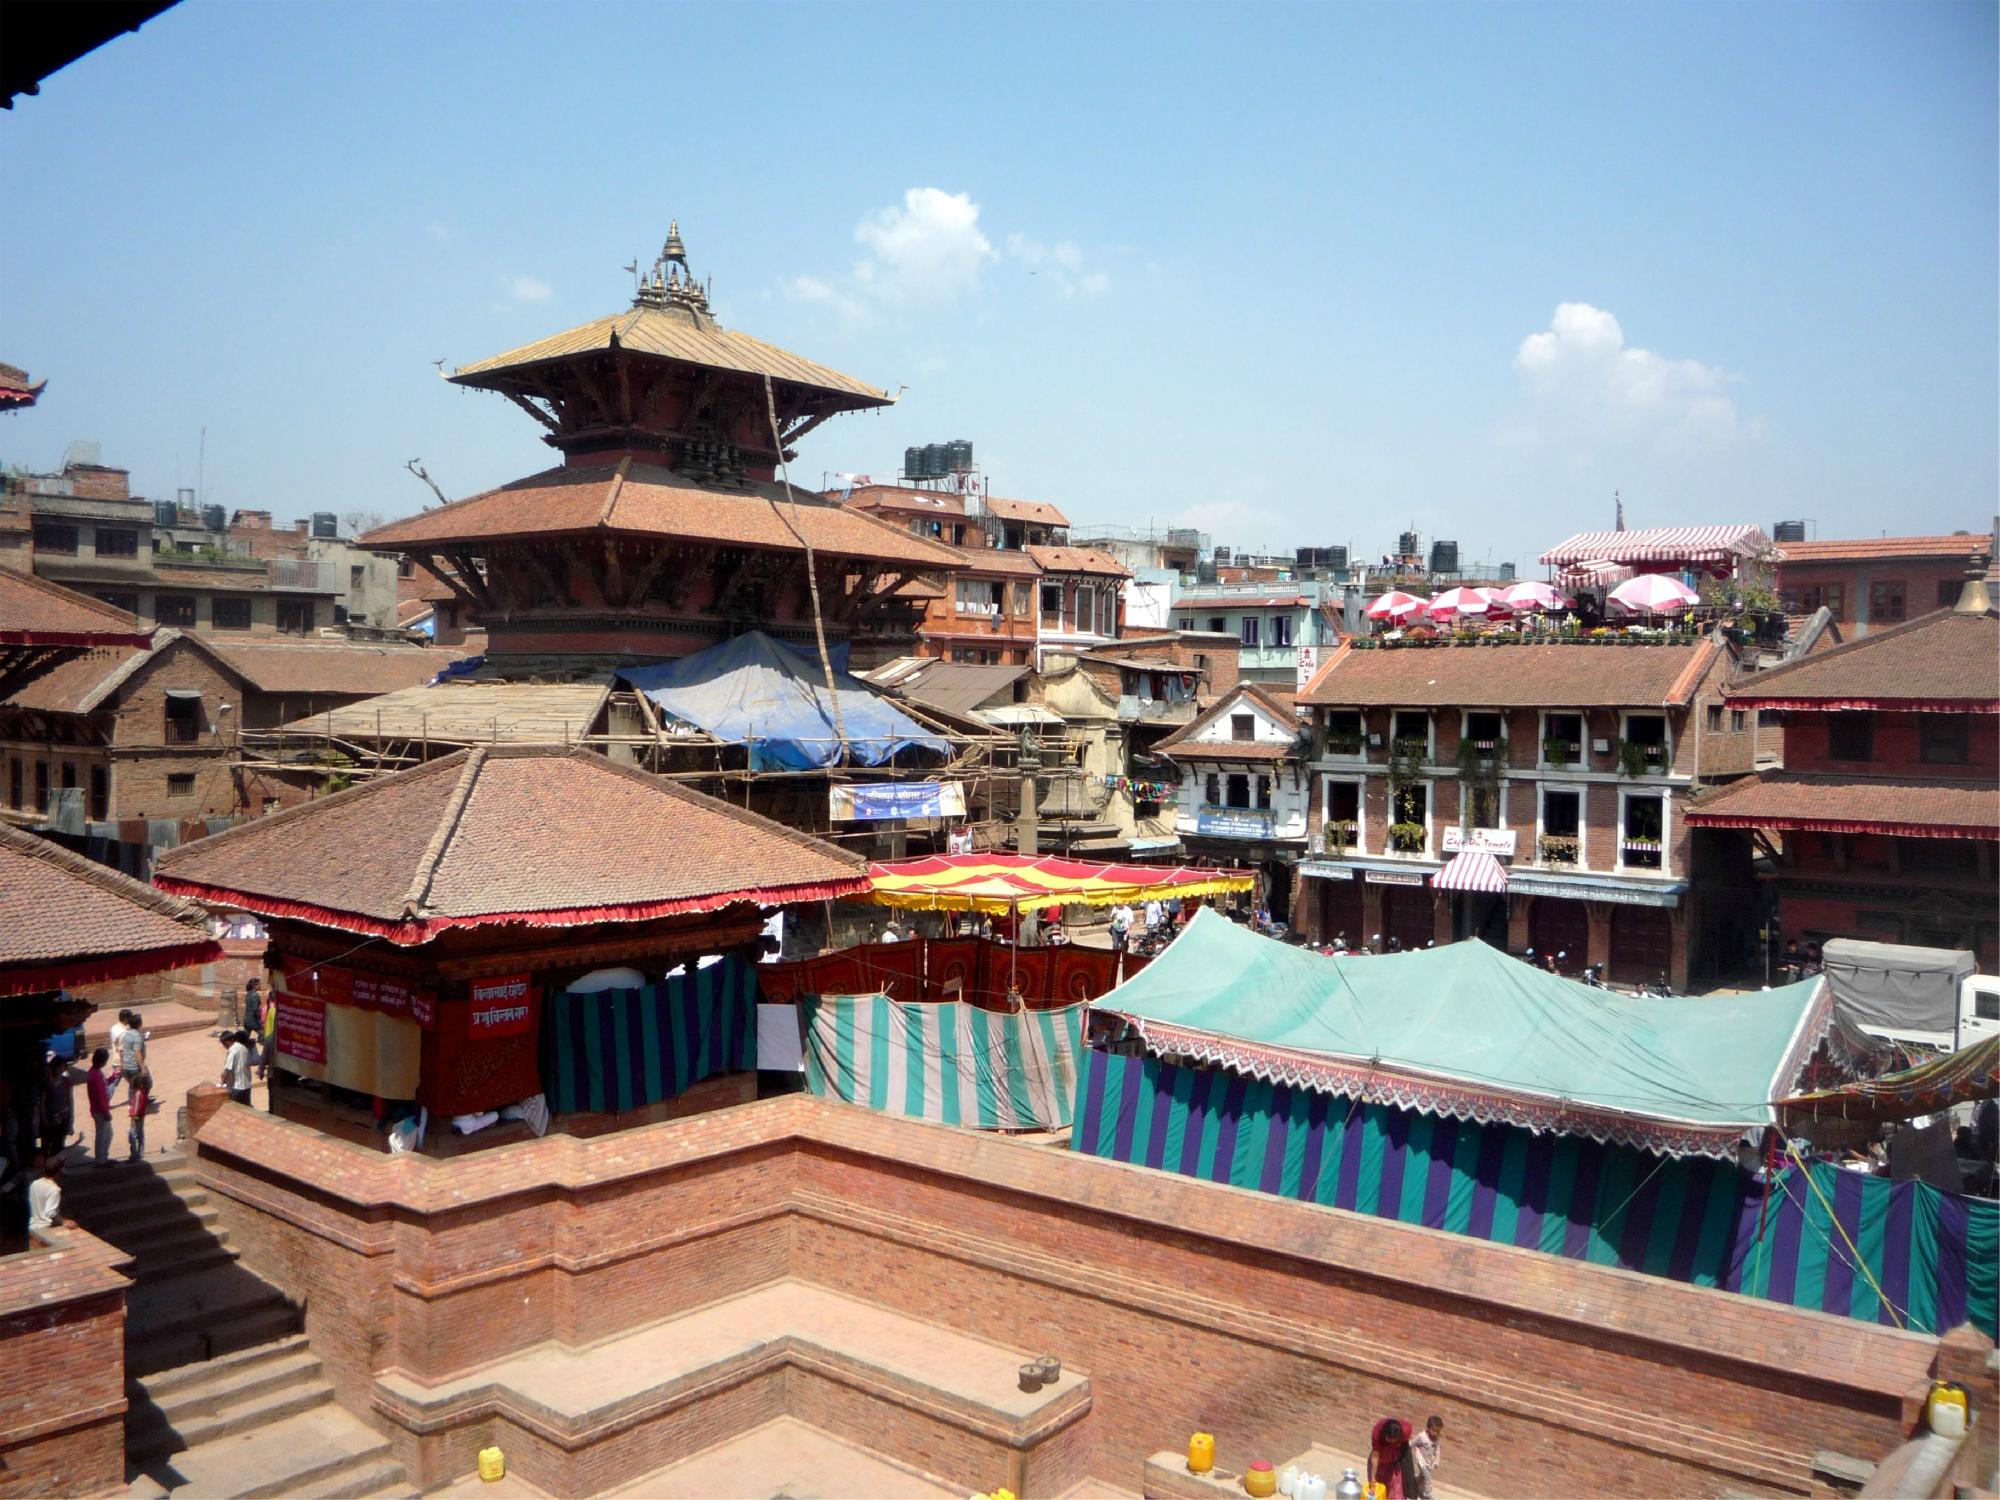 ネパールの美術館・博物館 ベスト10 - トリップアドバイザー